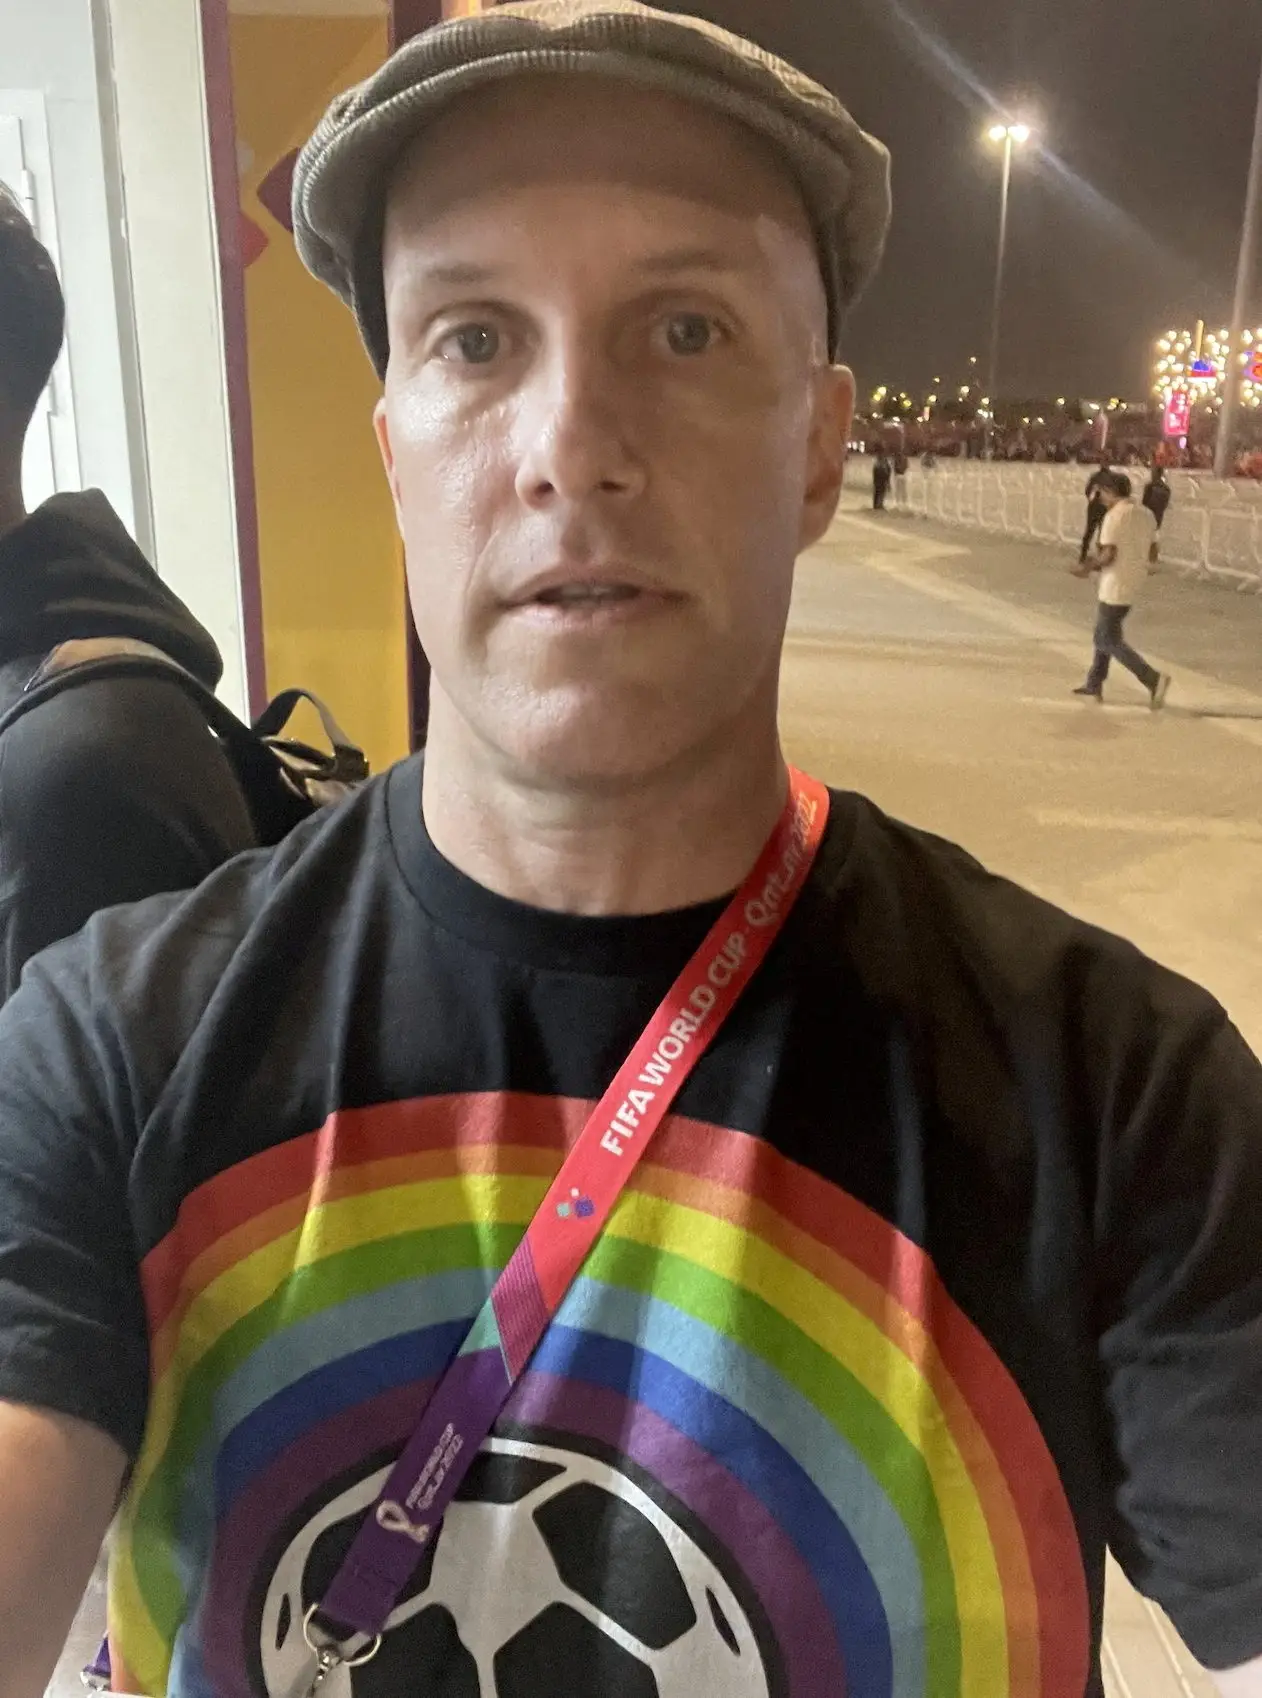 Morreu jornalista que usou uma t-shirt arco-íris quando cobria o Mundial no Qatar